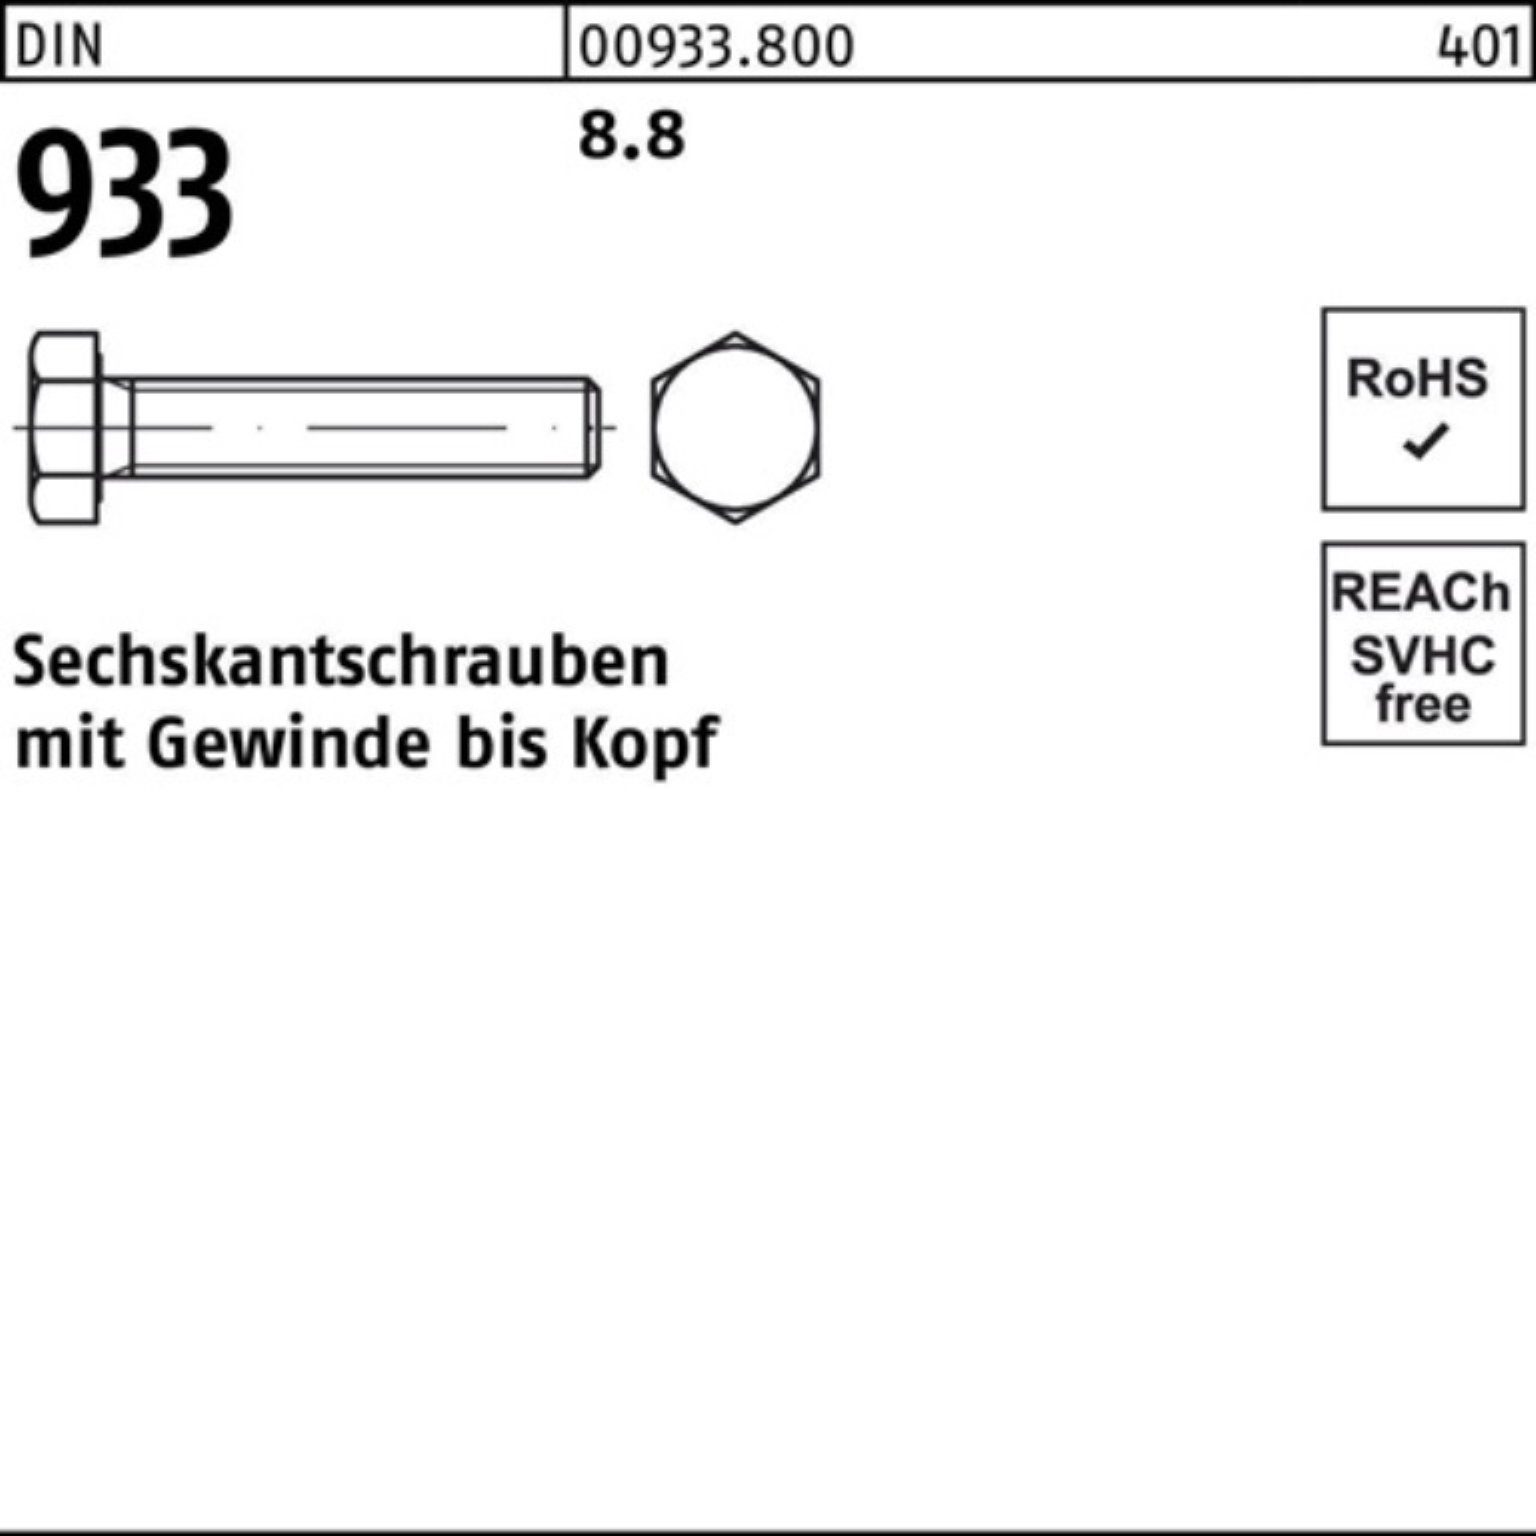 100er 100 Reyher Sechskantschraube 8.8 933 VG M3x Stück Pack 933 DIN Sechskantschraube DIN 16